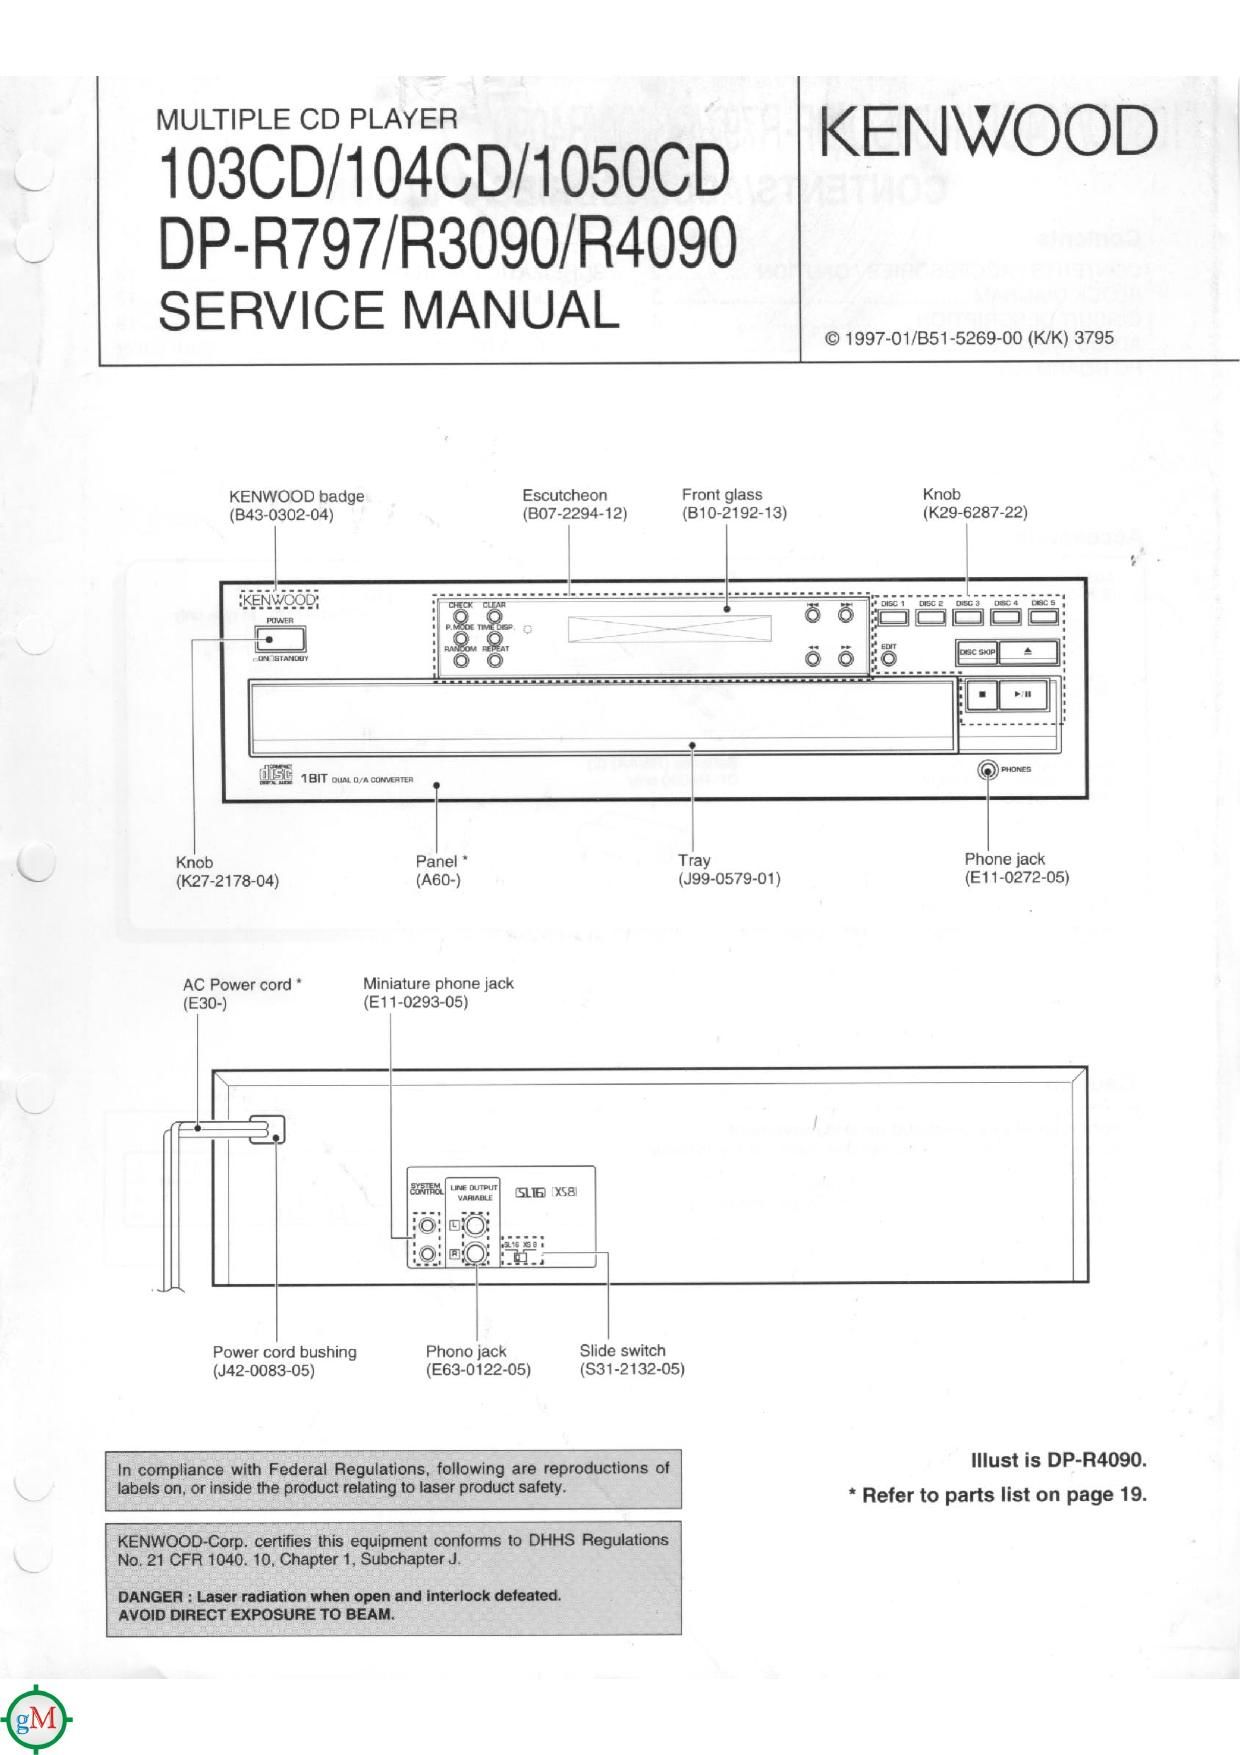 Kenwood 1050 CD Service Manual